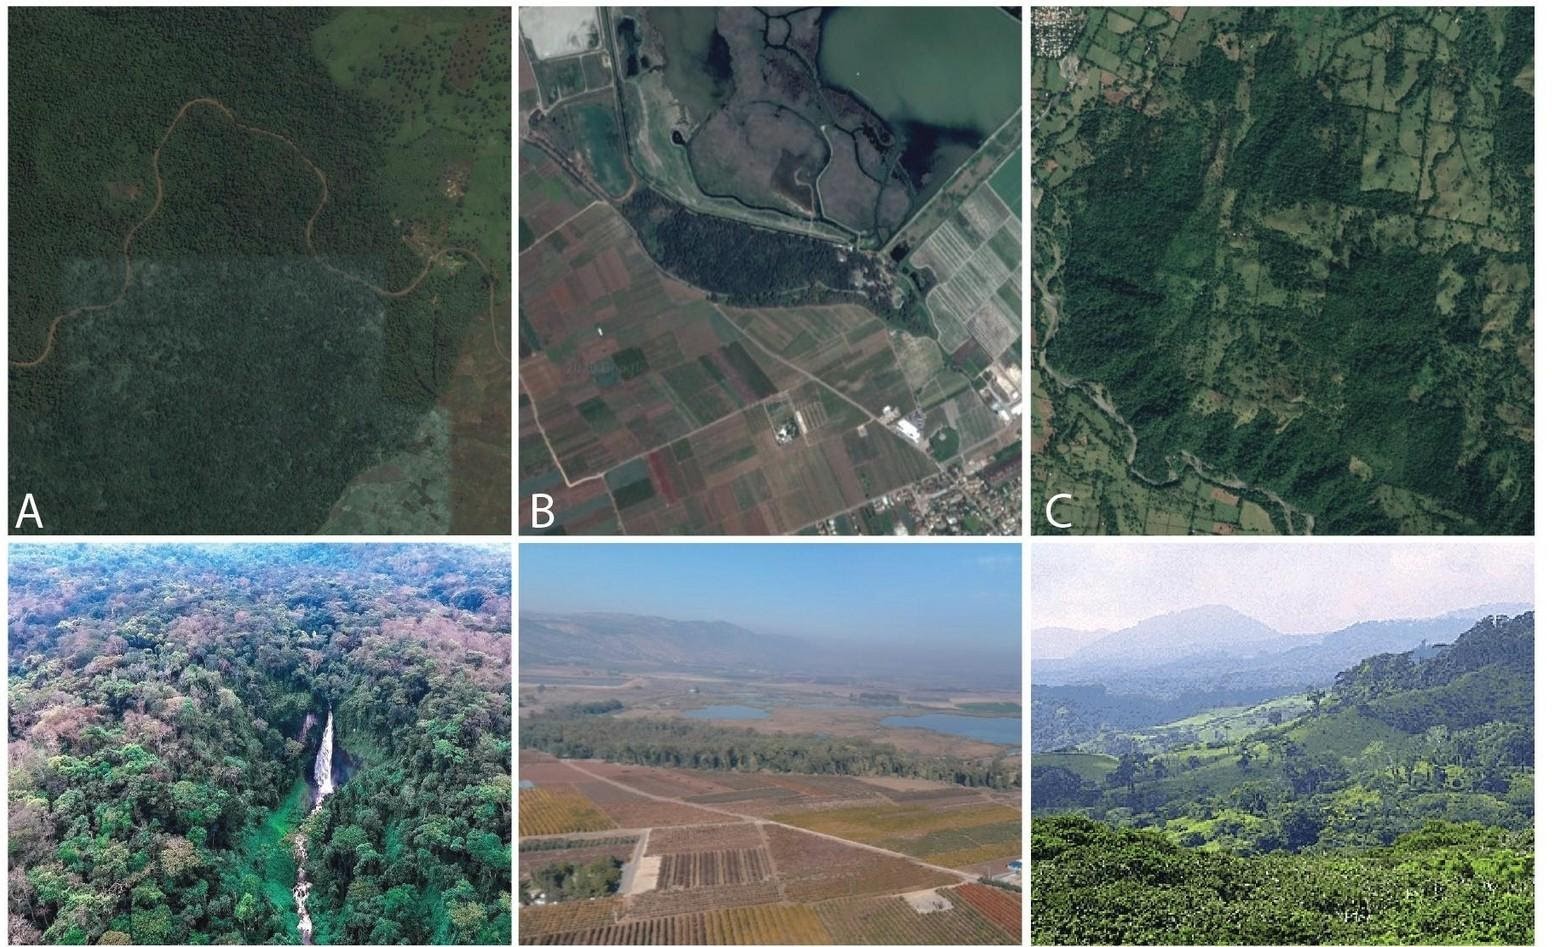 Exemple d’aires protégées parmi les plus importantes du monde en termes de biodiversité selon cette étude : A- Parc national de Kahuzi-Biega en République Démocratique du Congo (Catégorie IUCN II) ; B- Réserve naturelle d’Hula en Israël